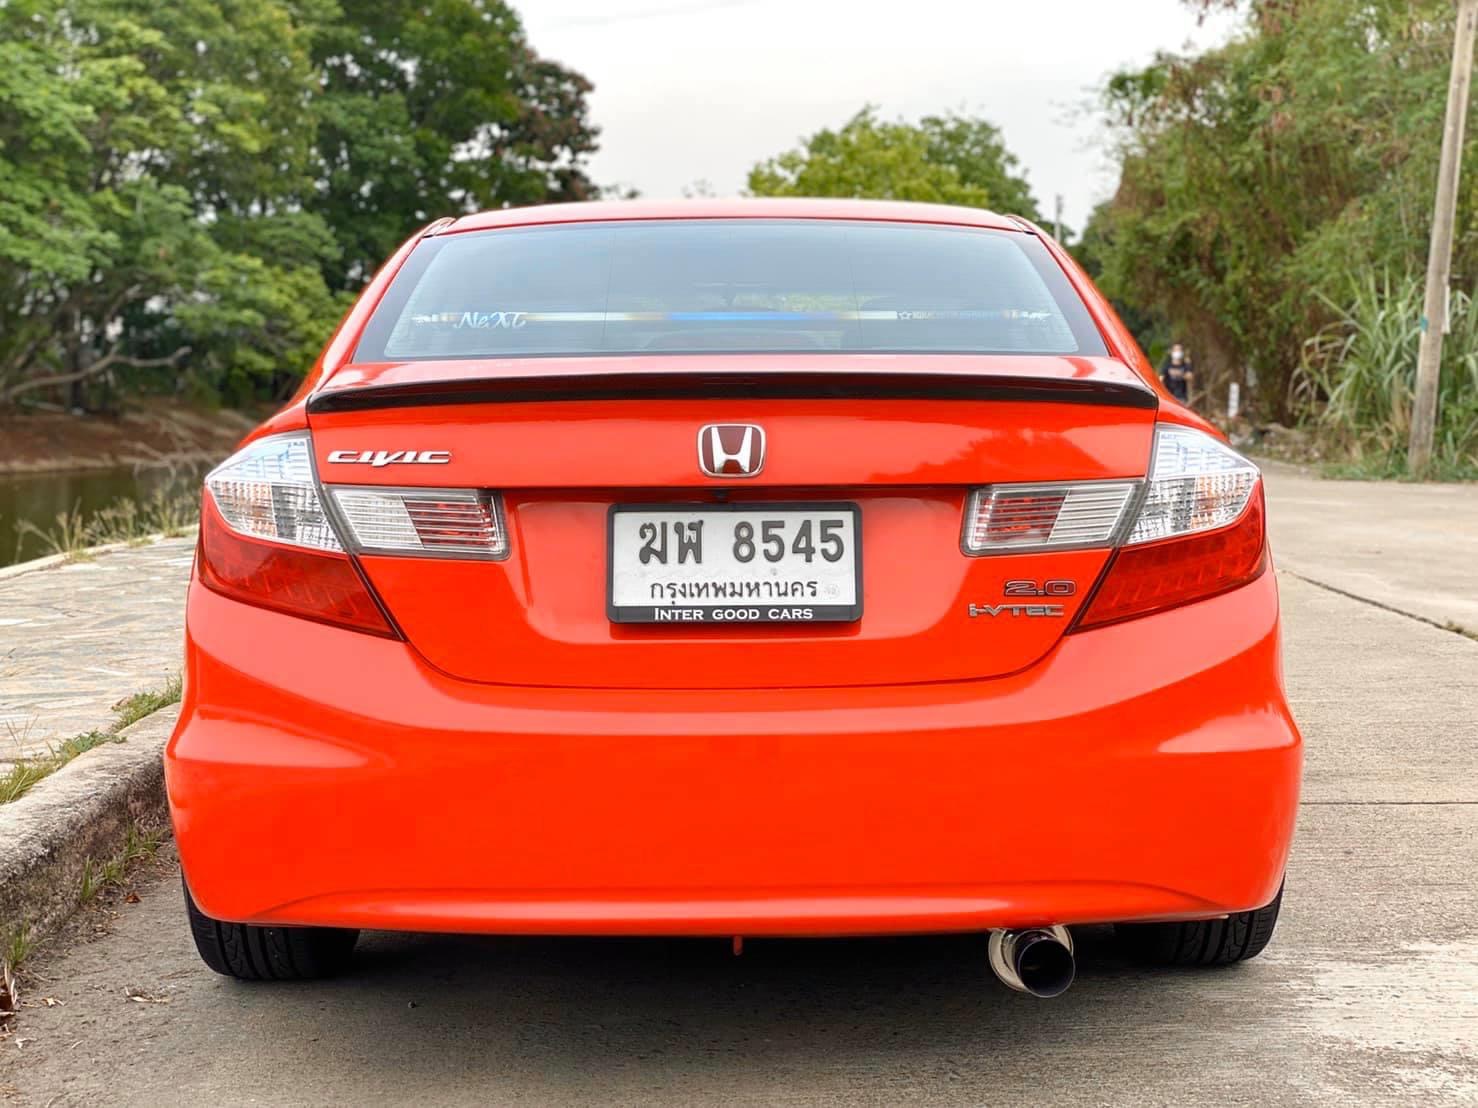 Honda Civic FB ปี 2012 สีส้ม